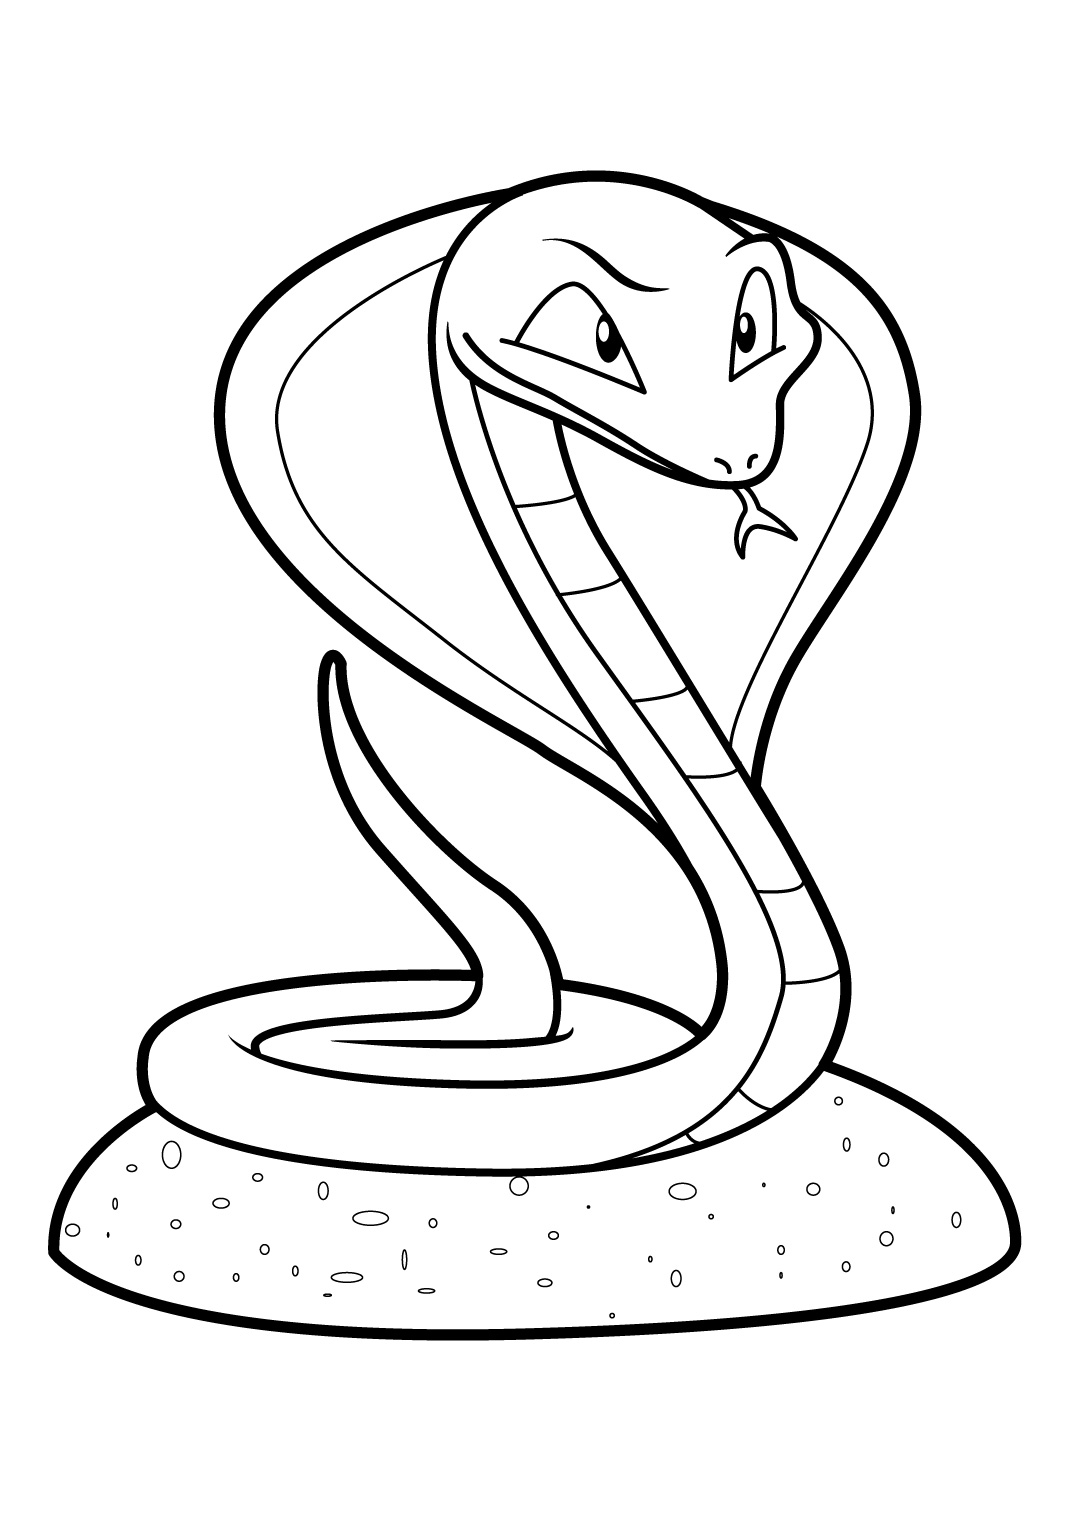 Disegno di Serpente da colorare